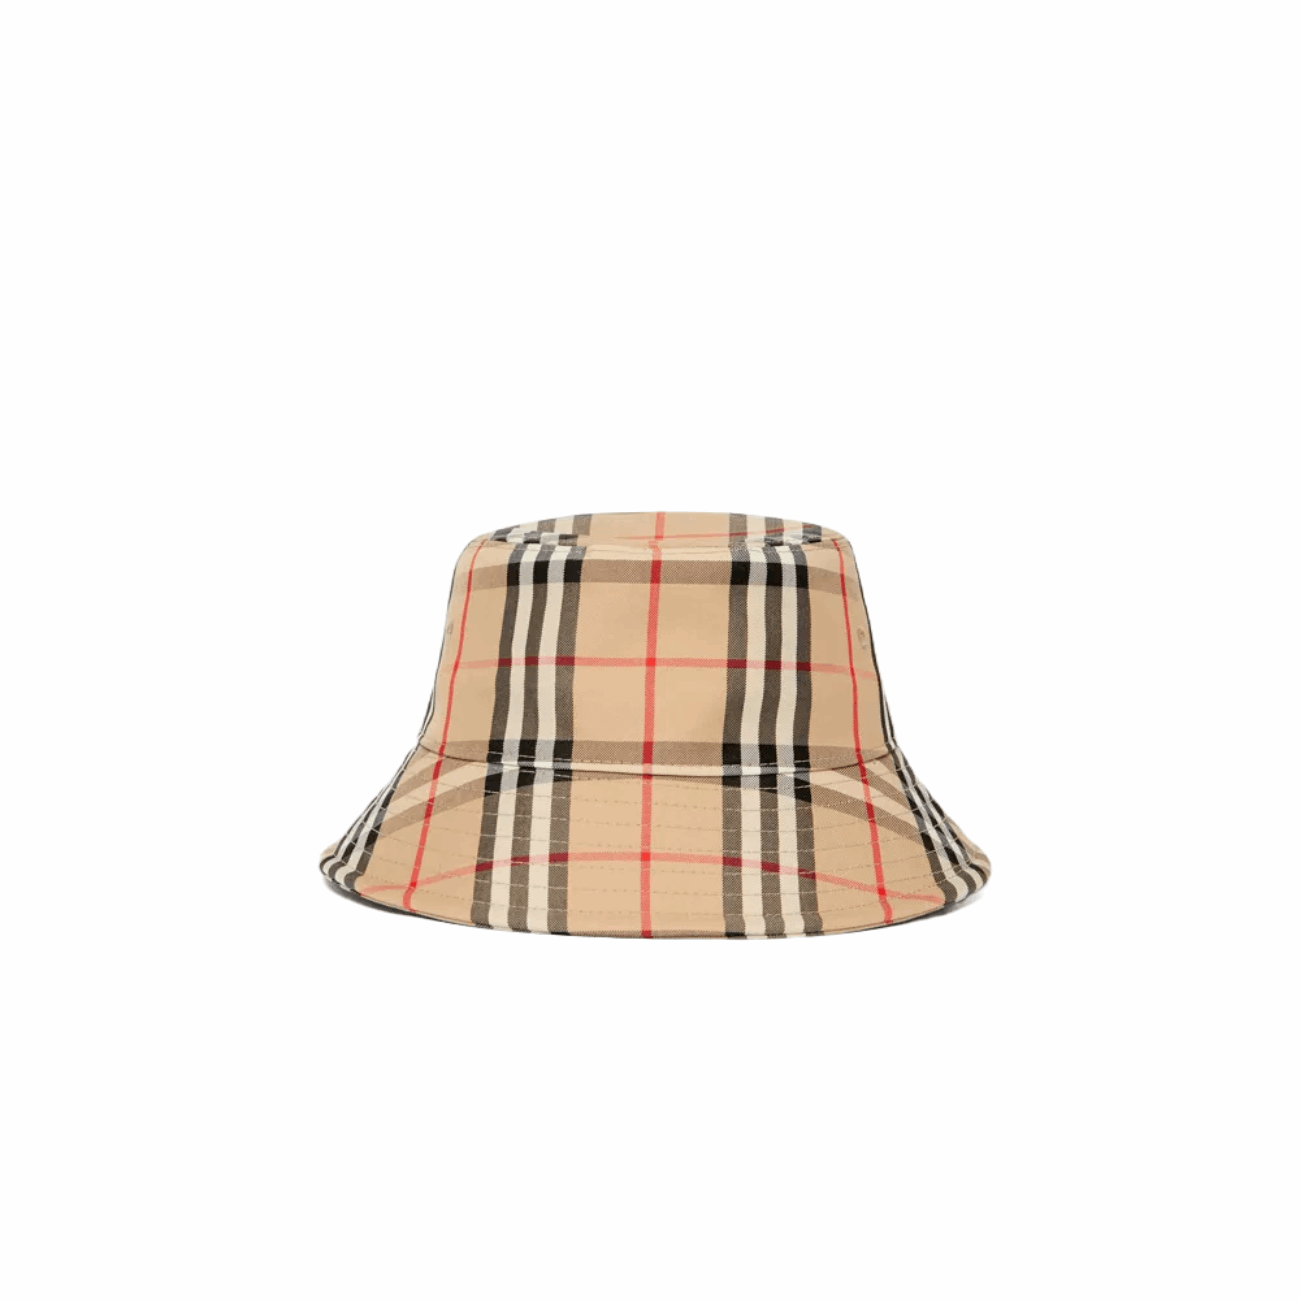 Burberry 80269271 Vintage Check Technical Cotton Unisex Bucket Hat, Archive Beige